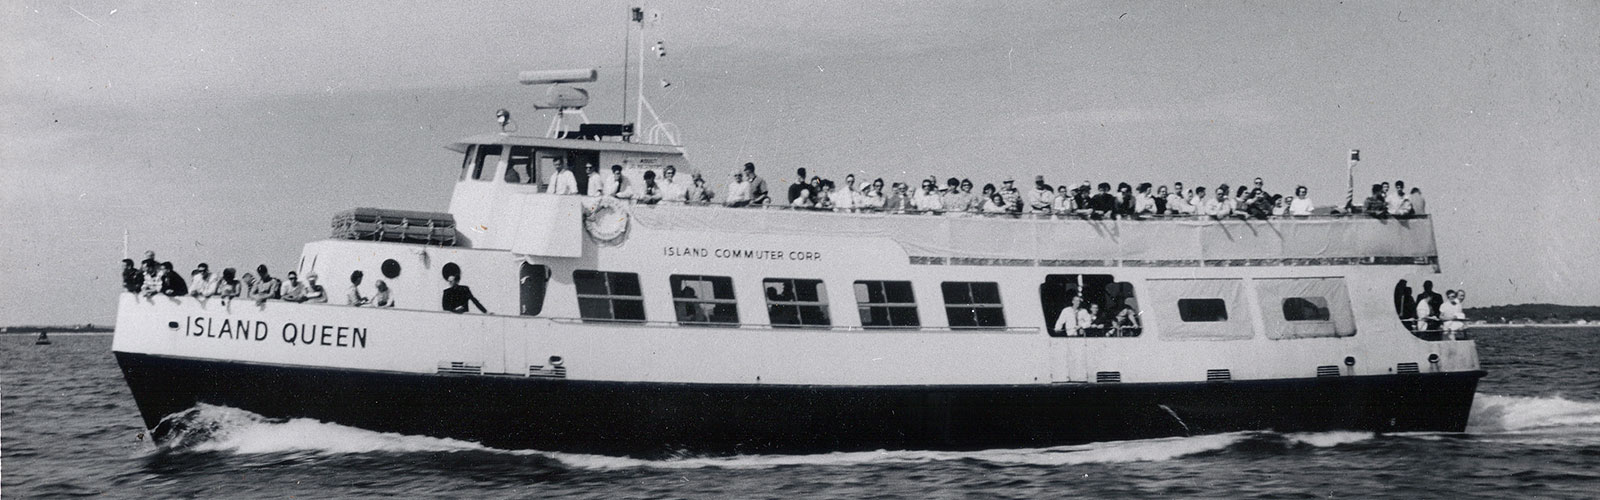 Vessel Island Queen (1963-1974)